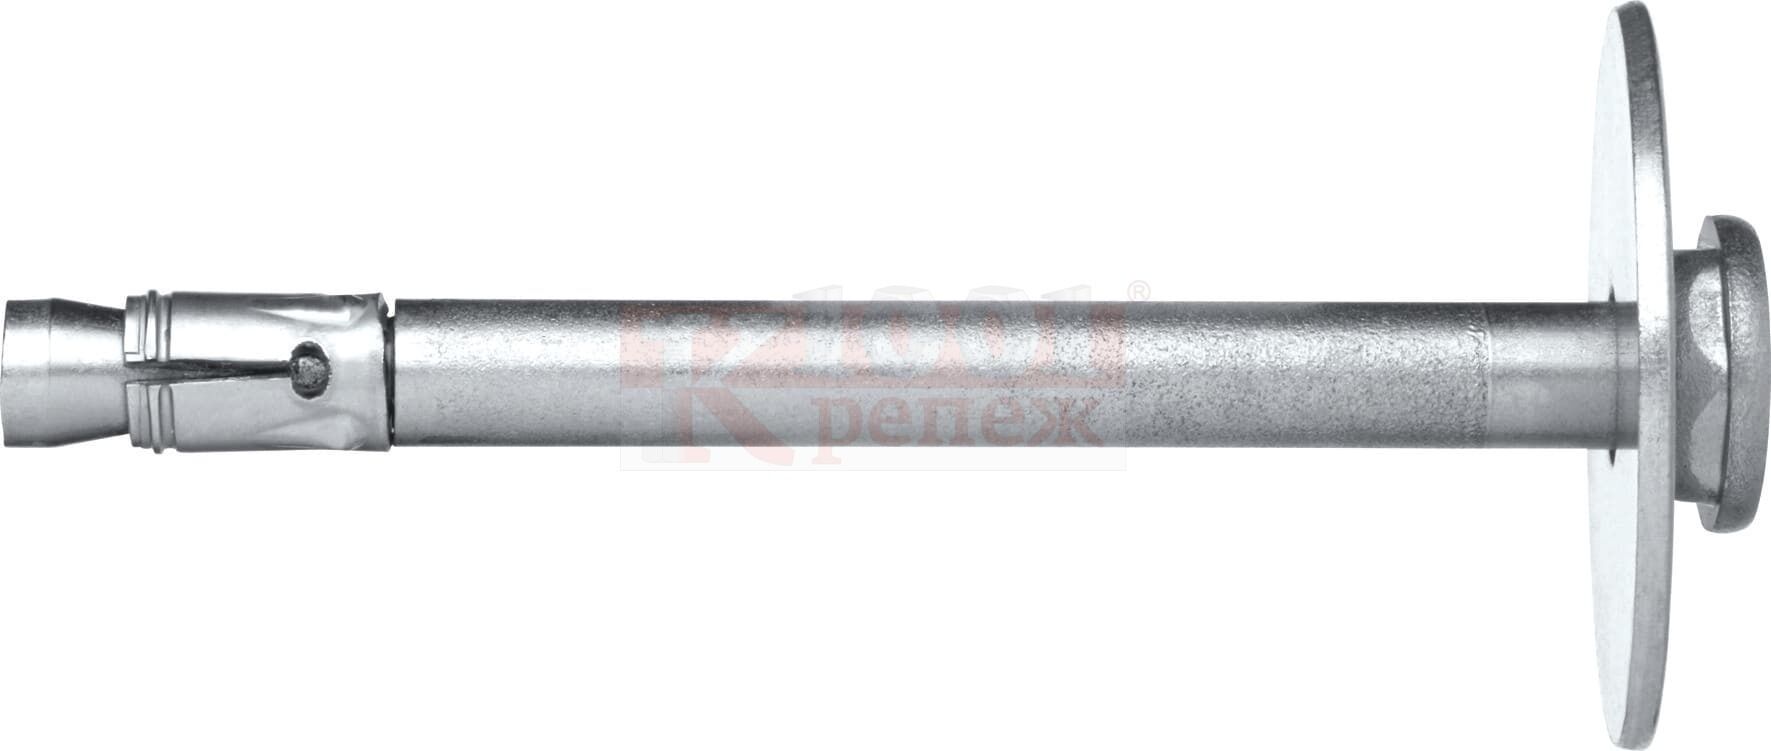 HFB-R A4 Анкер-гвоздь HILTI для крепления огнезащитных плит, 6x55/25/20/15 мм